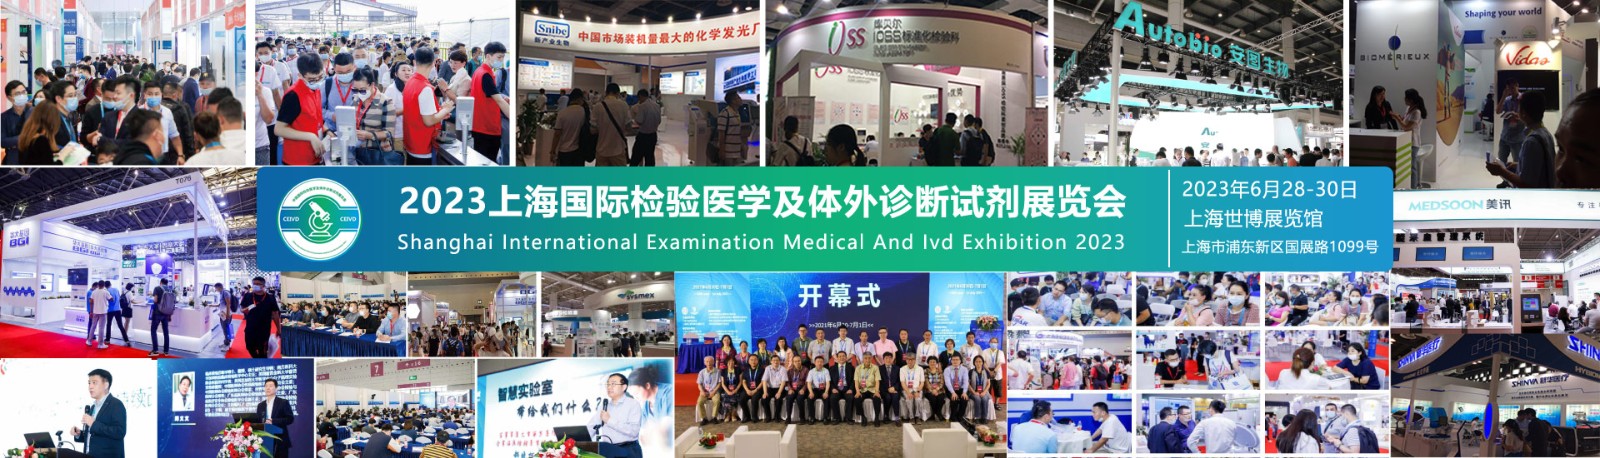 2023上海国际检验医学及IVD体外诊断试剂展览会